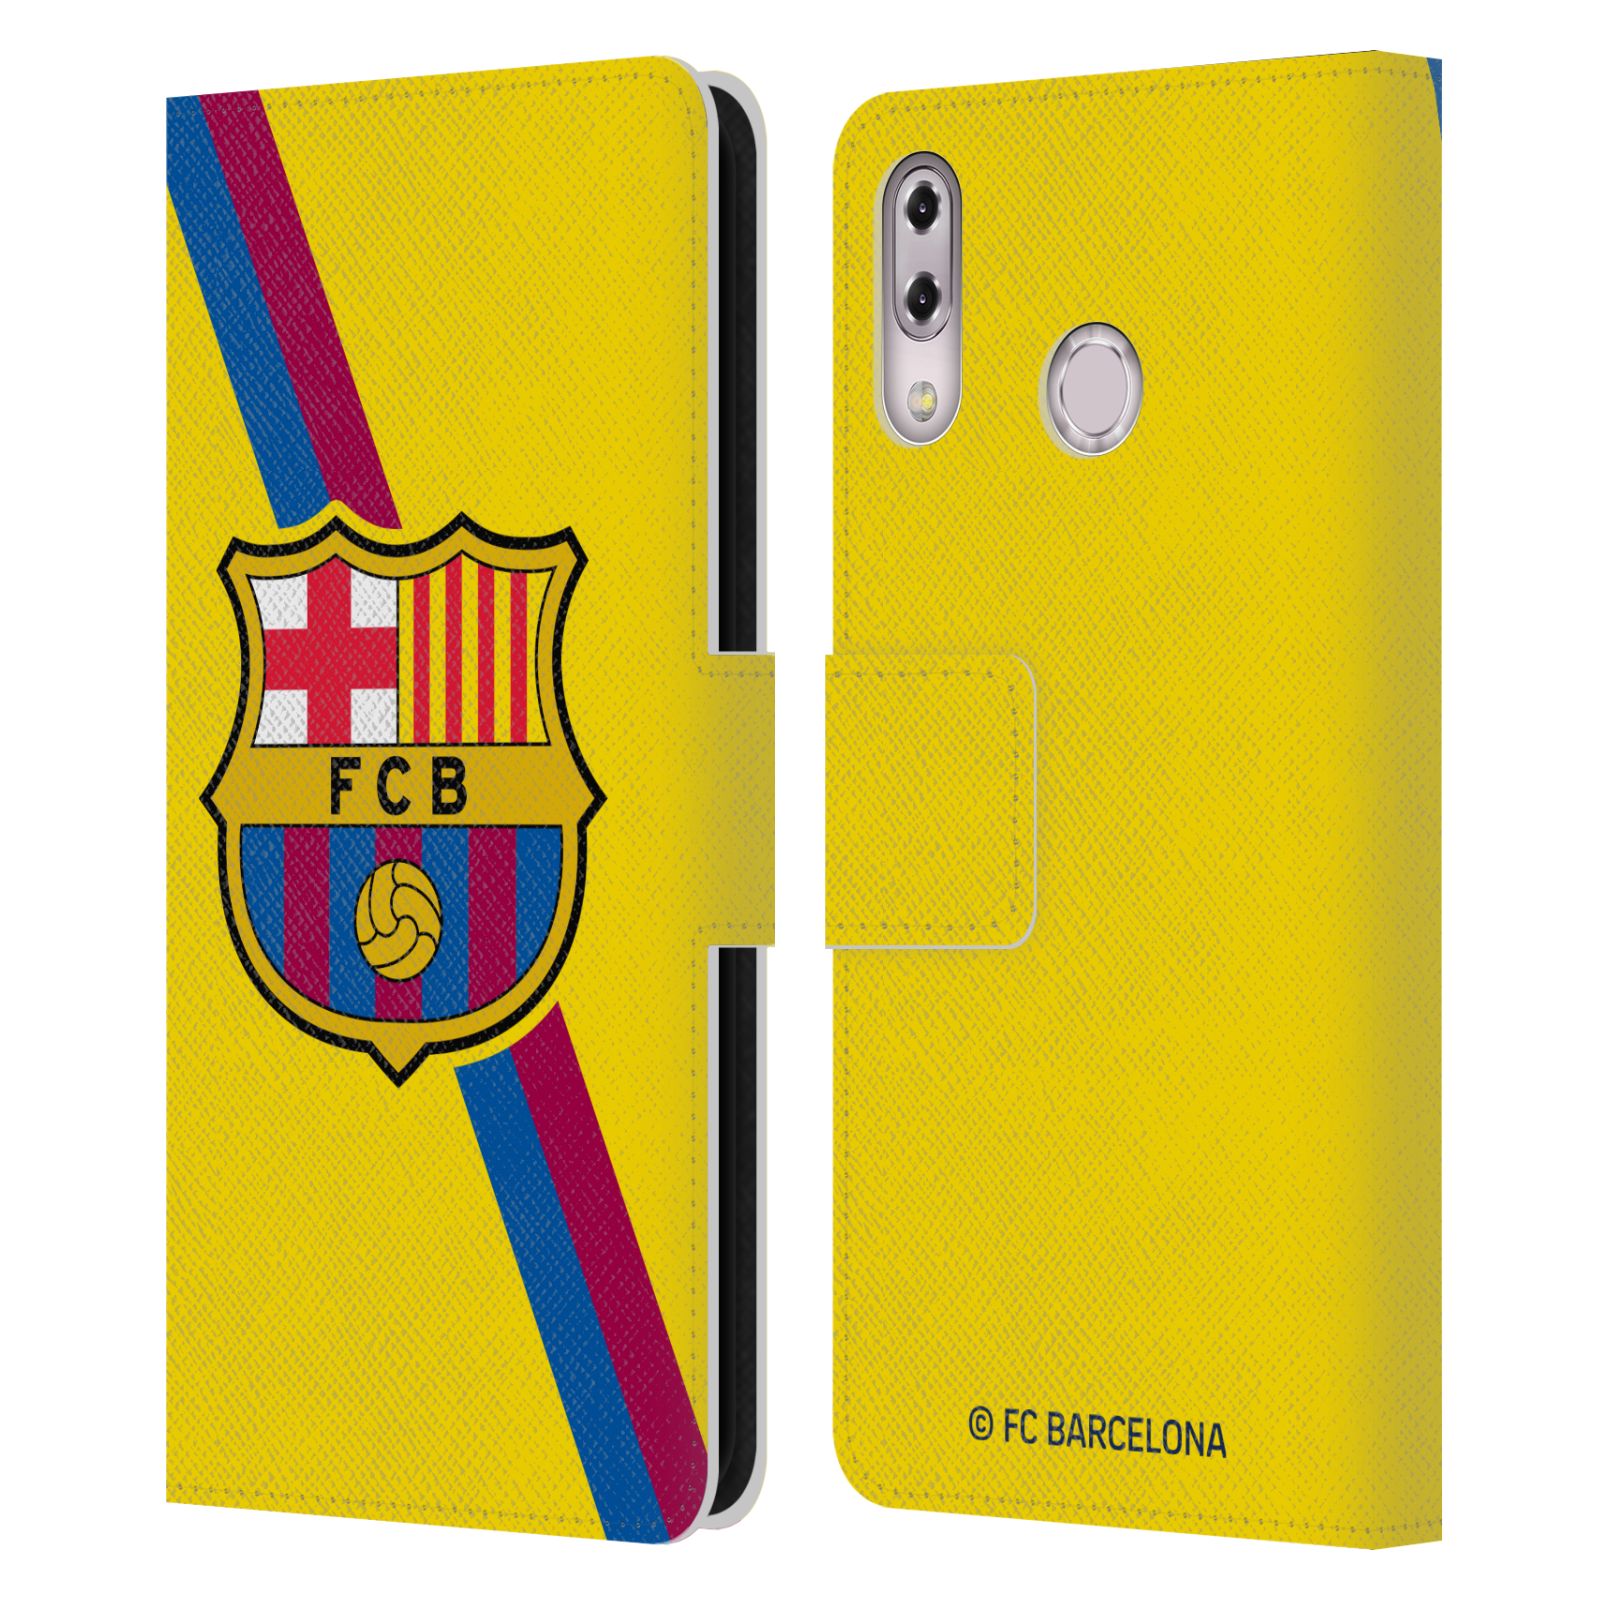 Pouzdro na mobil Asus Zenfone 5z ZS620KL, 5 ZE620KL  - HEAD CASE - FC Barcelona - Dres Hosté žlutý